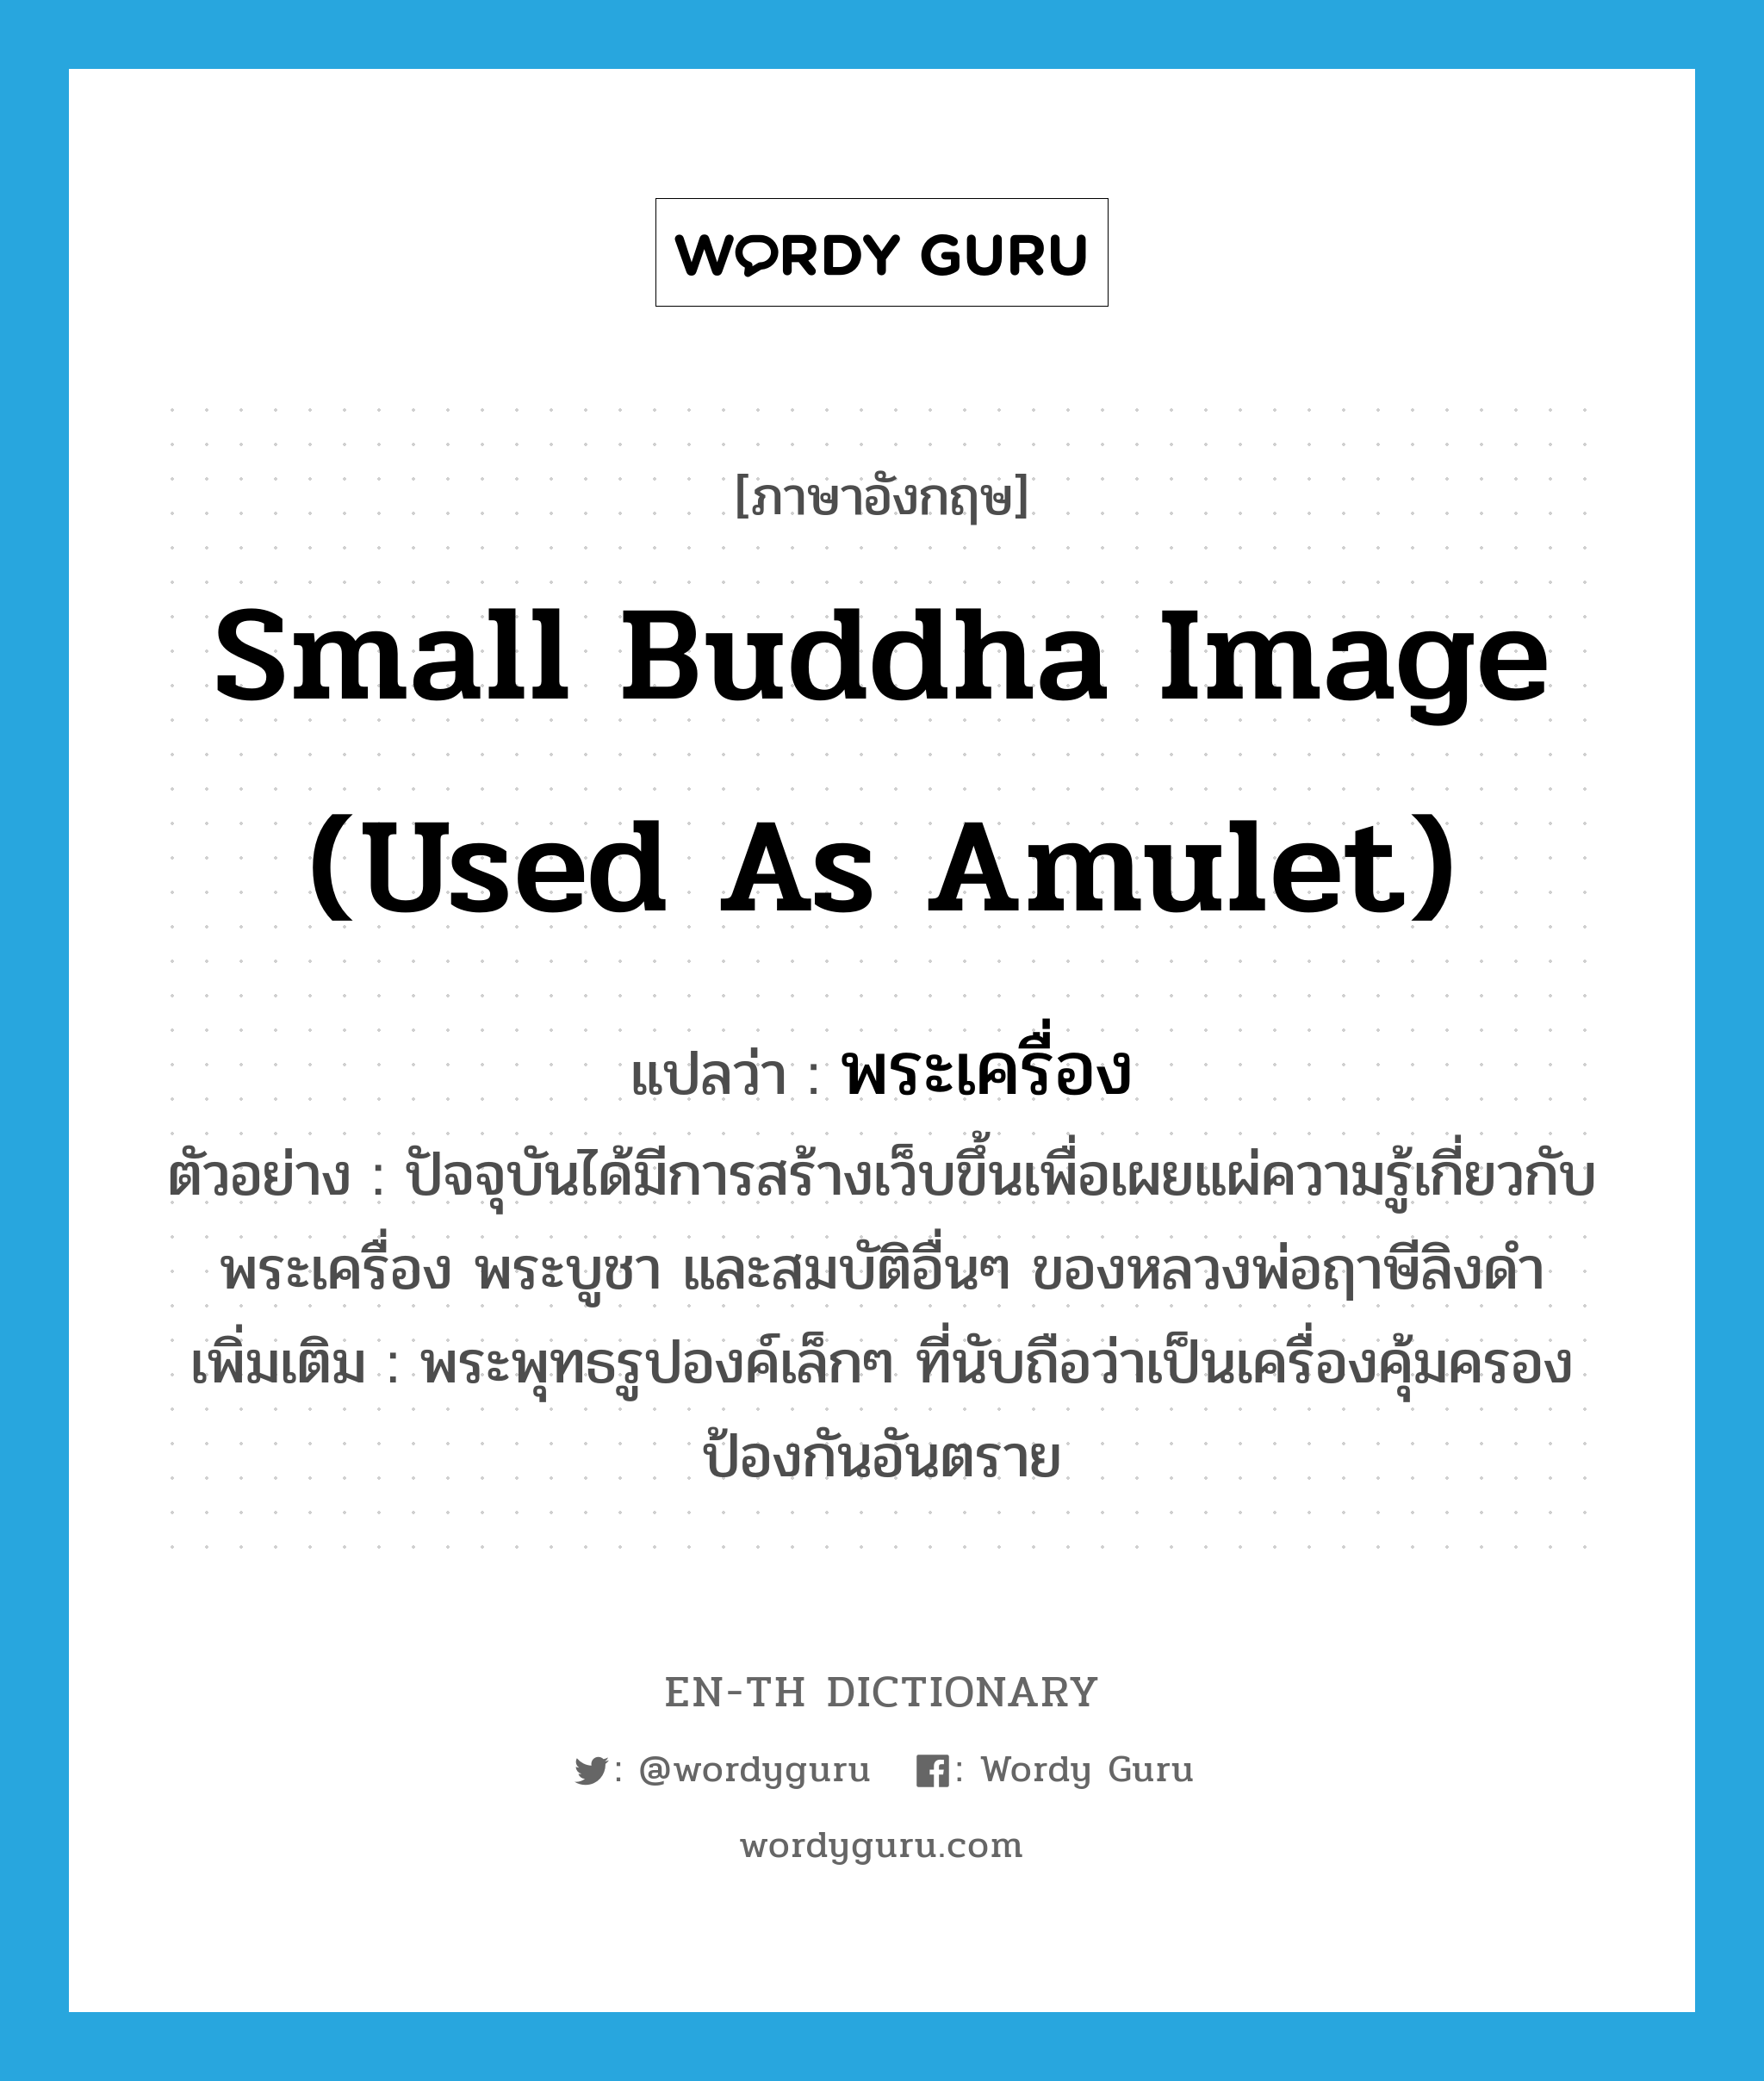 พระเครื่อง ภาษาอังกฤษ?, คำศัพท์ภาษาอังกฤษ พระเครื่อง แปลว่า small Buddha image (used as amulet) ประเภท N ตัวอย่าง ปัจจุบันได้มีการสร้างเว็บขึ้นเพื่อเผยแผ่ความรู้เกี่ยวกับ พระเครื่อง พระบูชา และสมบัติอื่นๆ ของหลวงพ่อฤาษีลิงดำ เพิ่มเติม พระพุทธรูปองค์เล็กๆ ที่นับถือว่าเป็นเครื่องคุ้มครองป้องกันอันตราย หมวด N